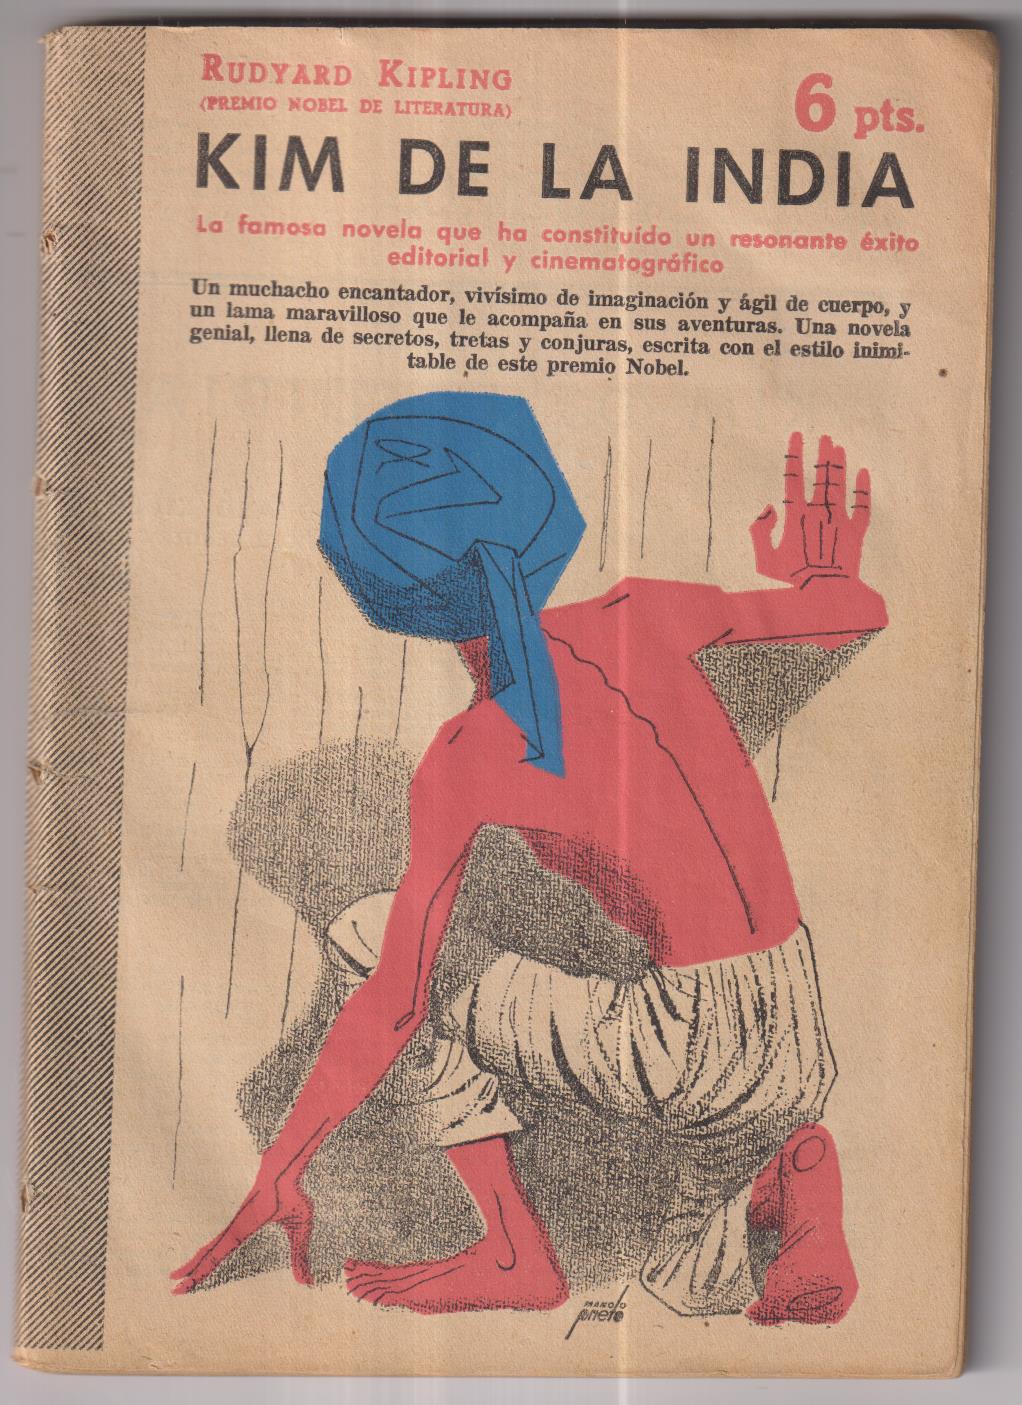 Revista Literaria. Novelas y Cuentos nº 1232. Rudyard Kipling. Kim de la India, año 1954